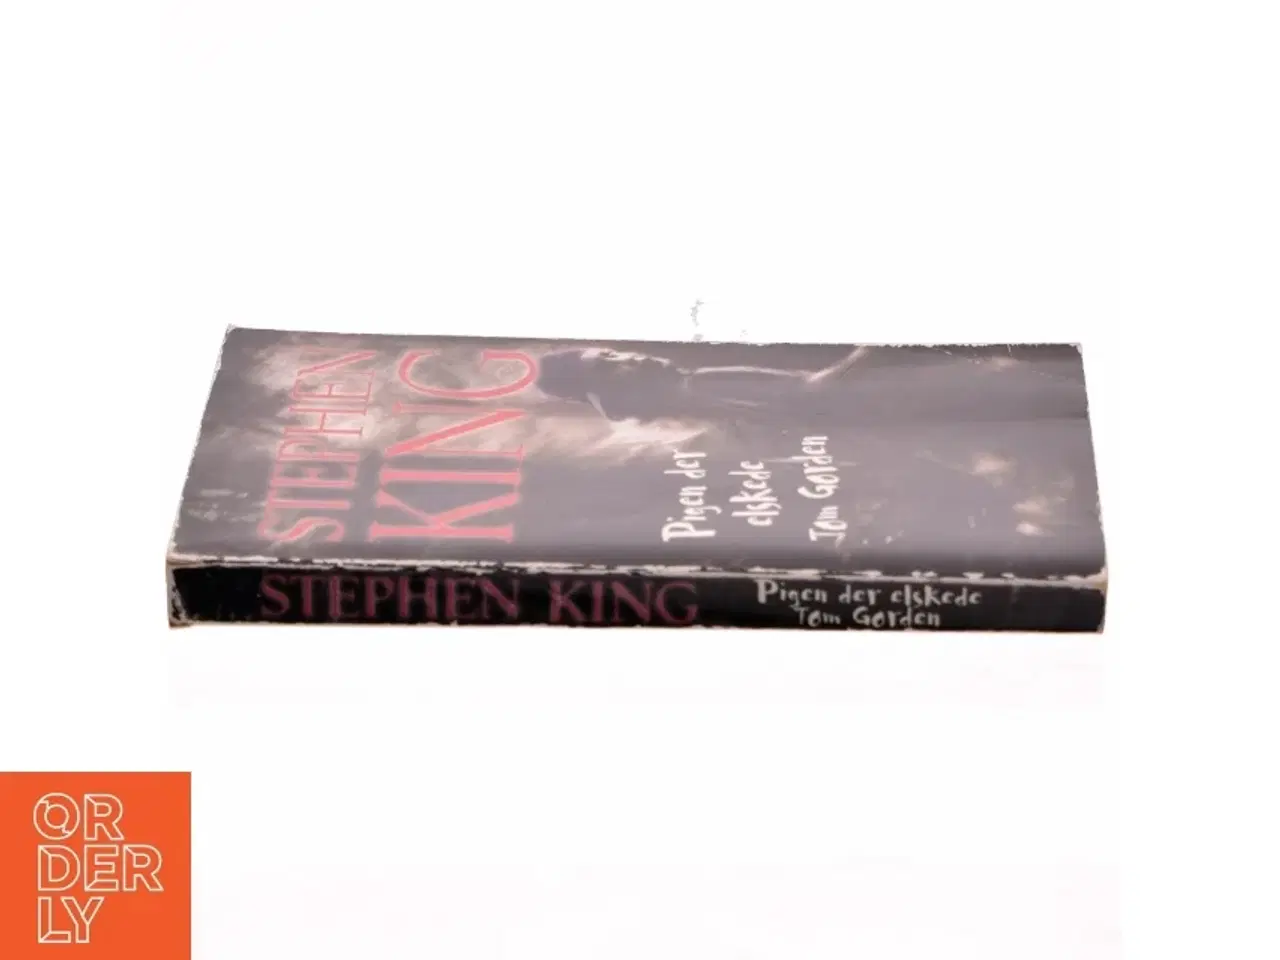 Billede 2 - Pigen der elskede Tom Gordon af Stephen King (f. 1947) (Bog)